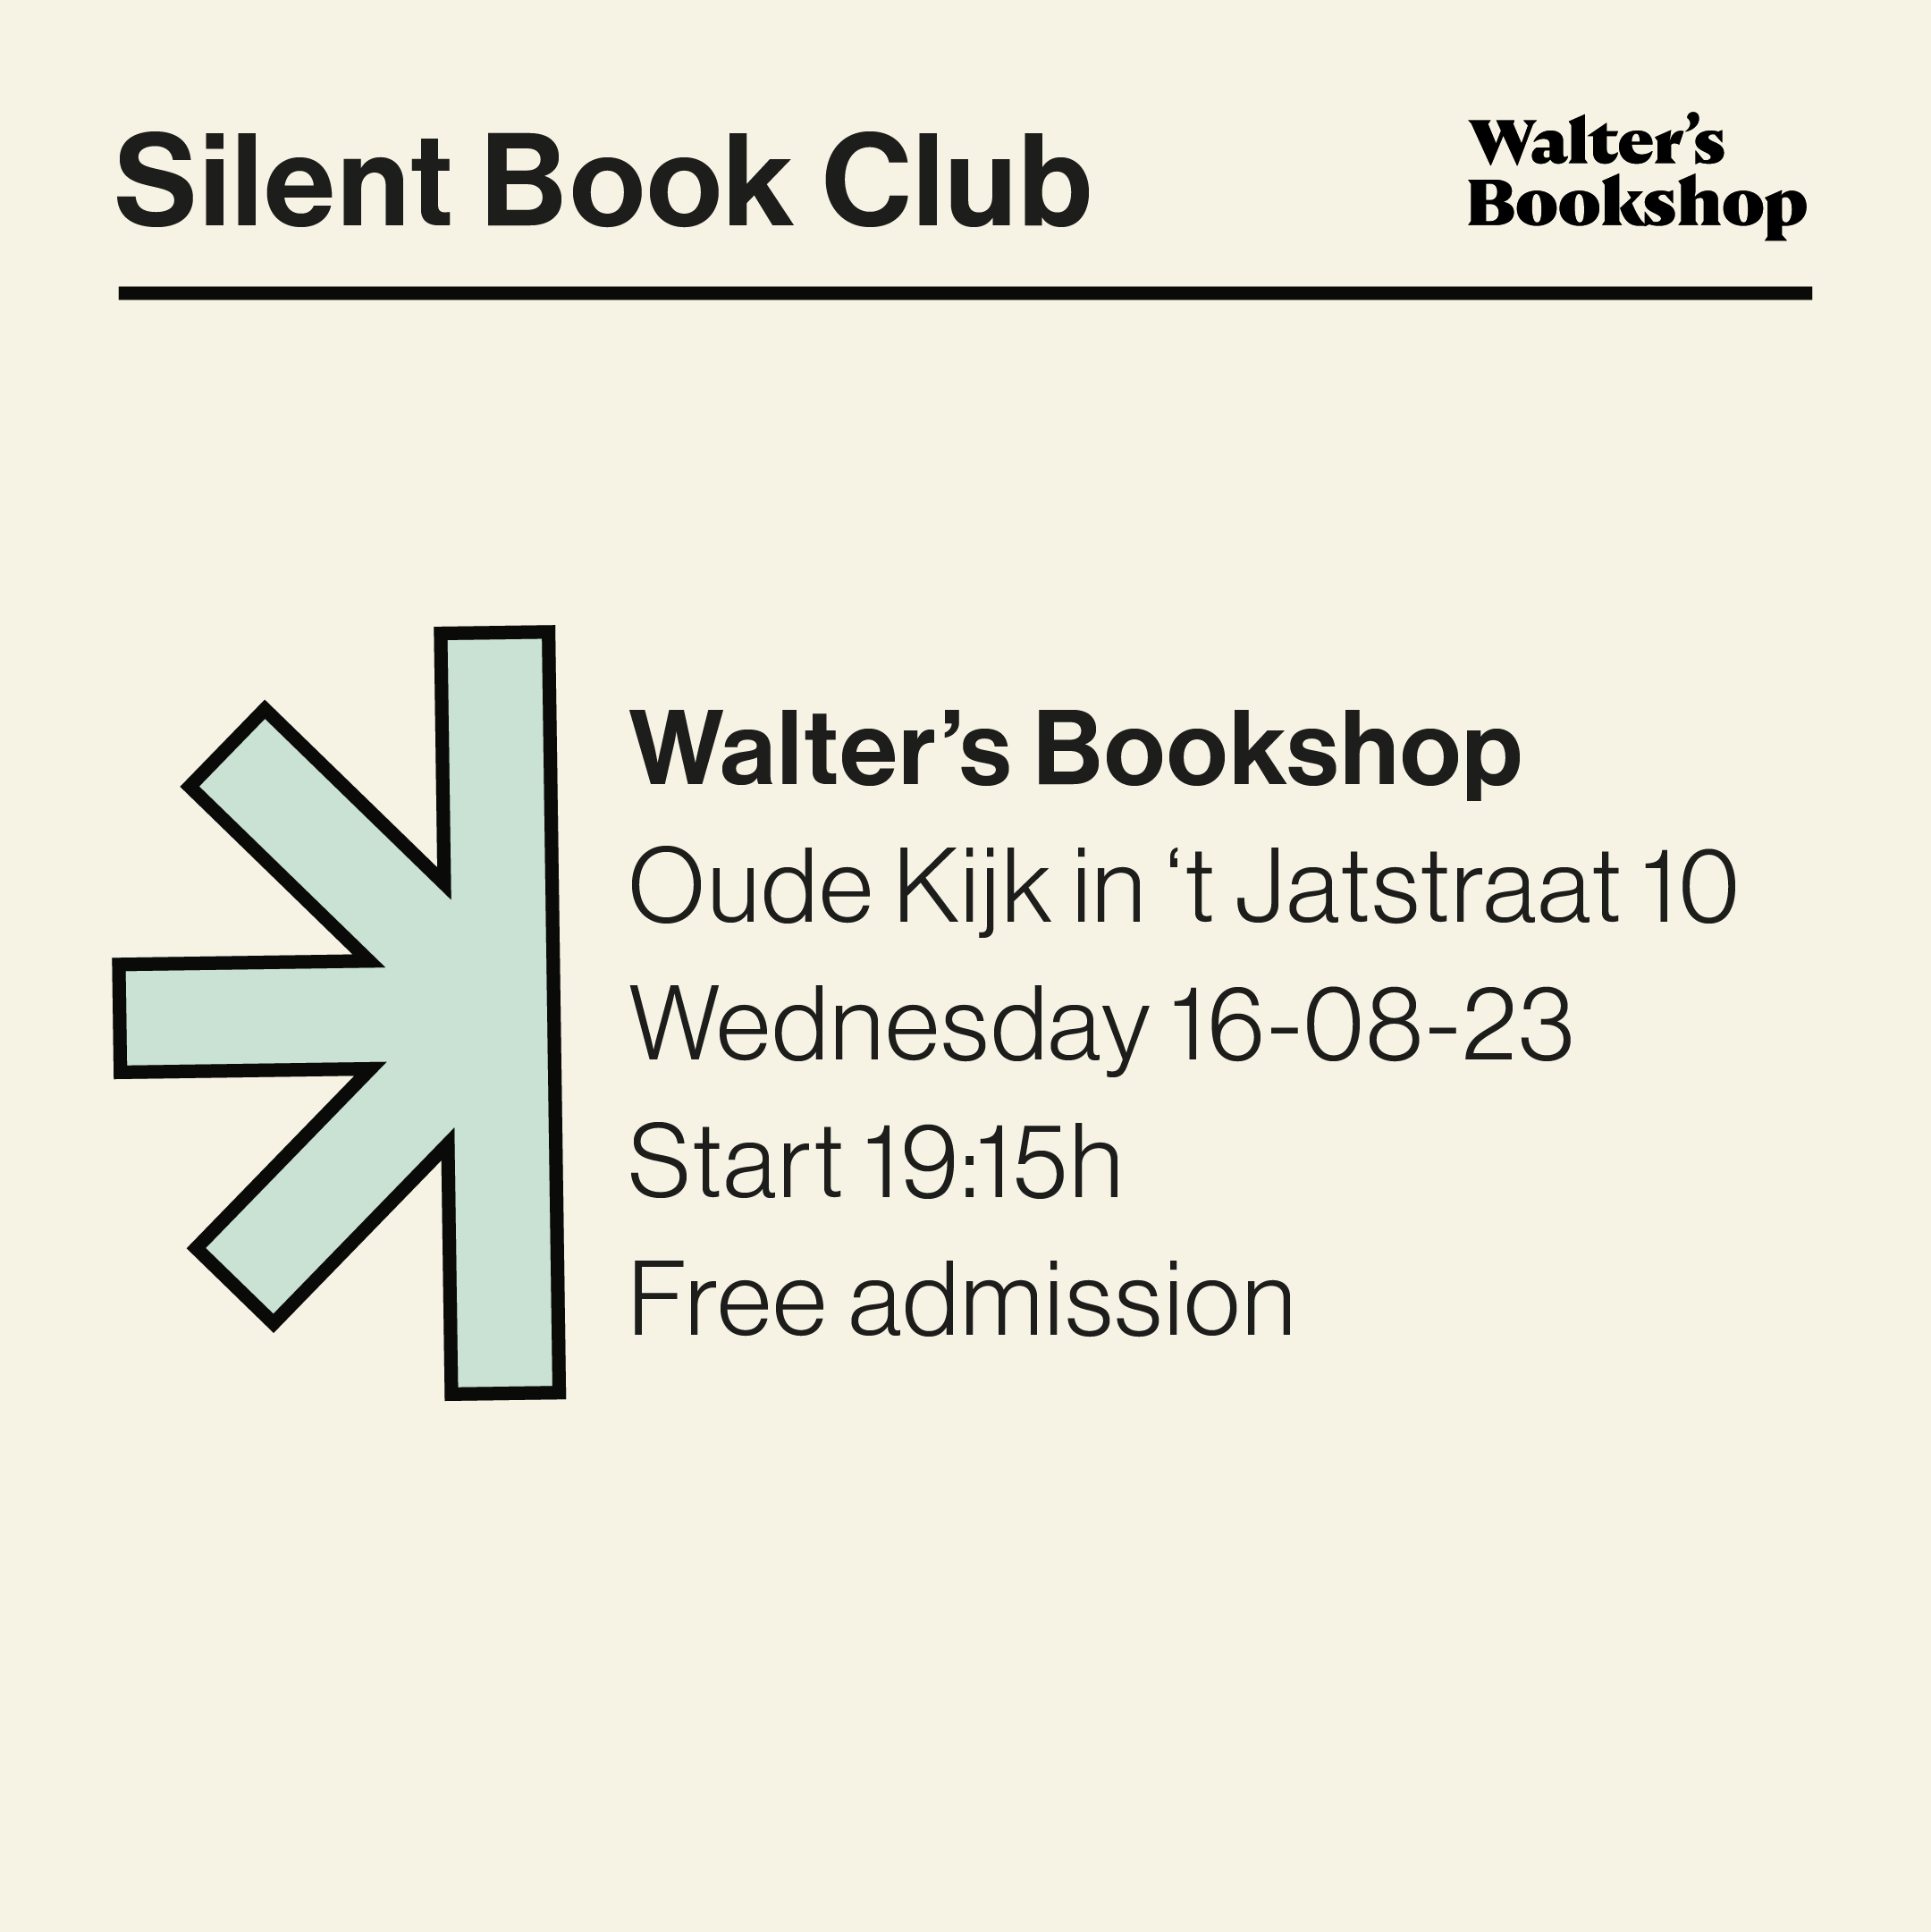 Silent Book Club_Walter's Bookshop_Groningen_Boekhandel